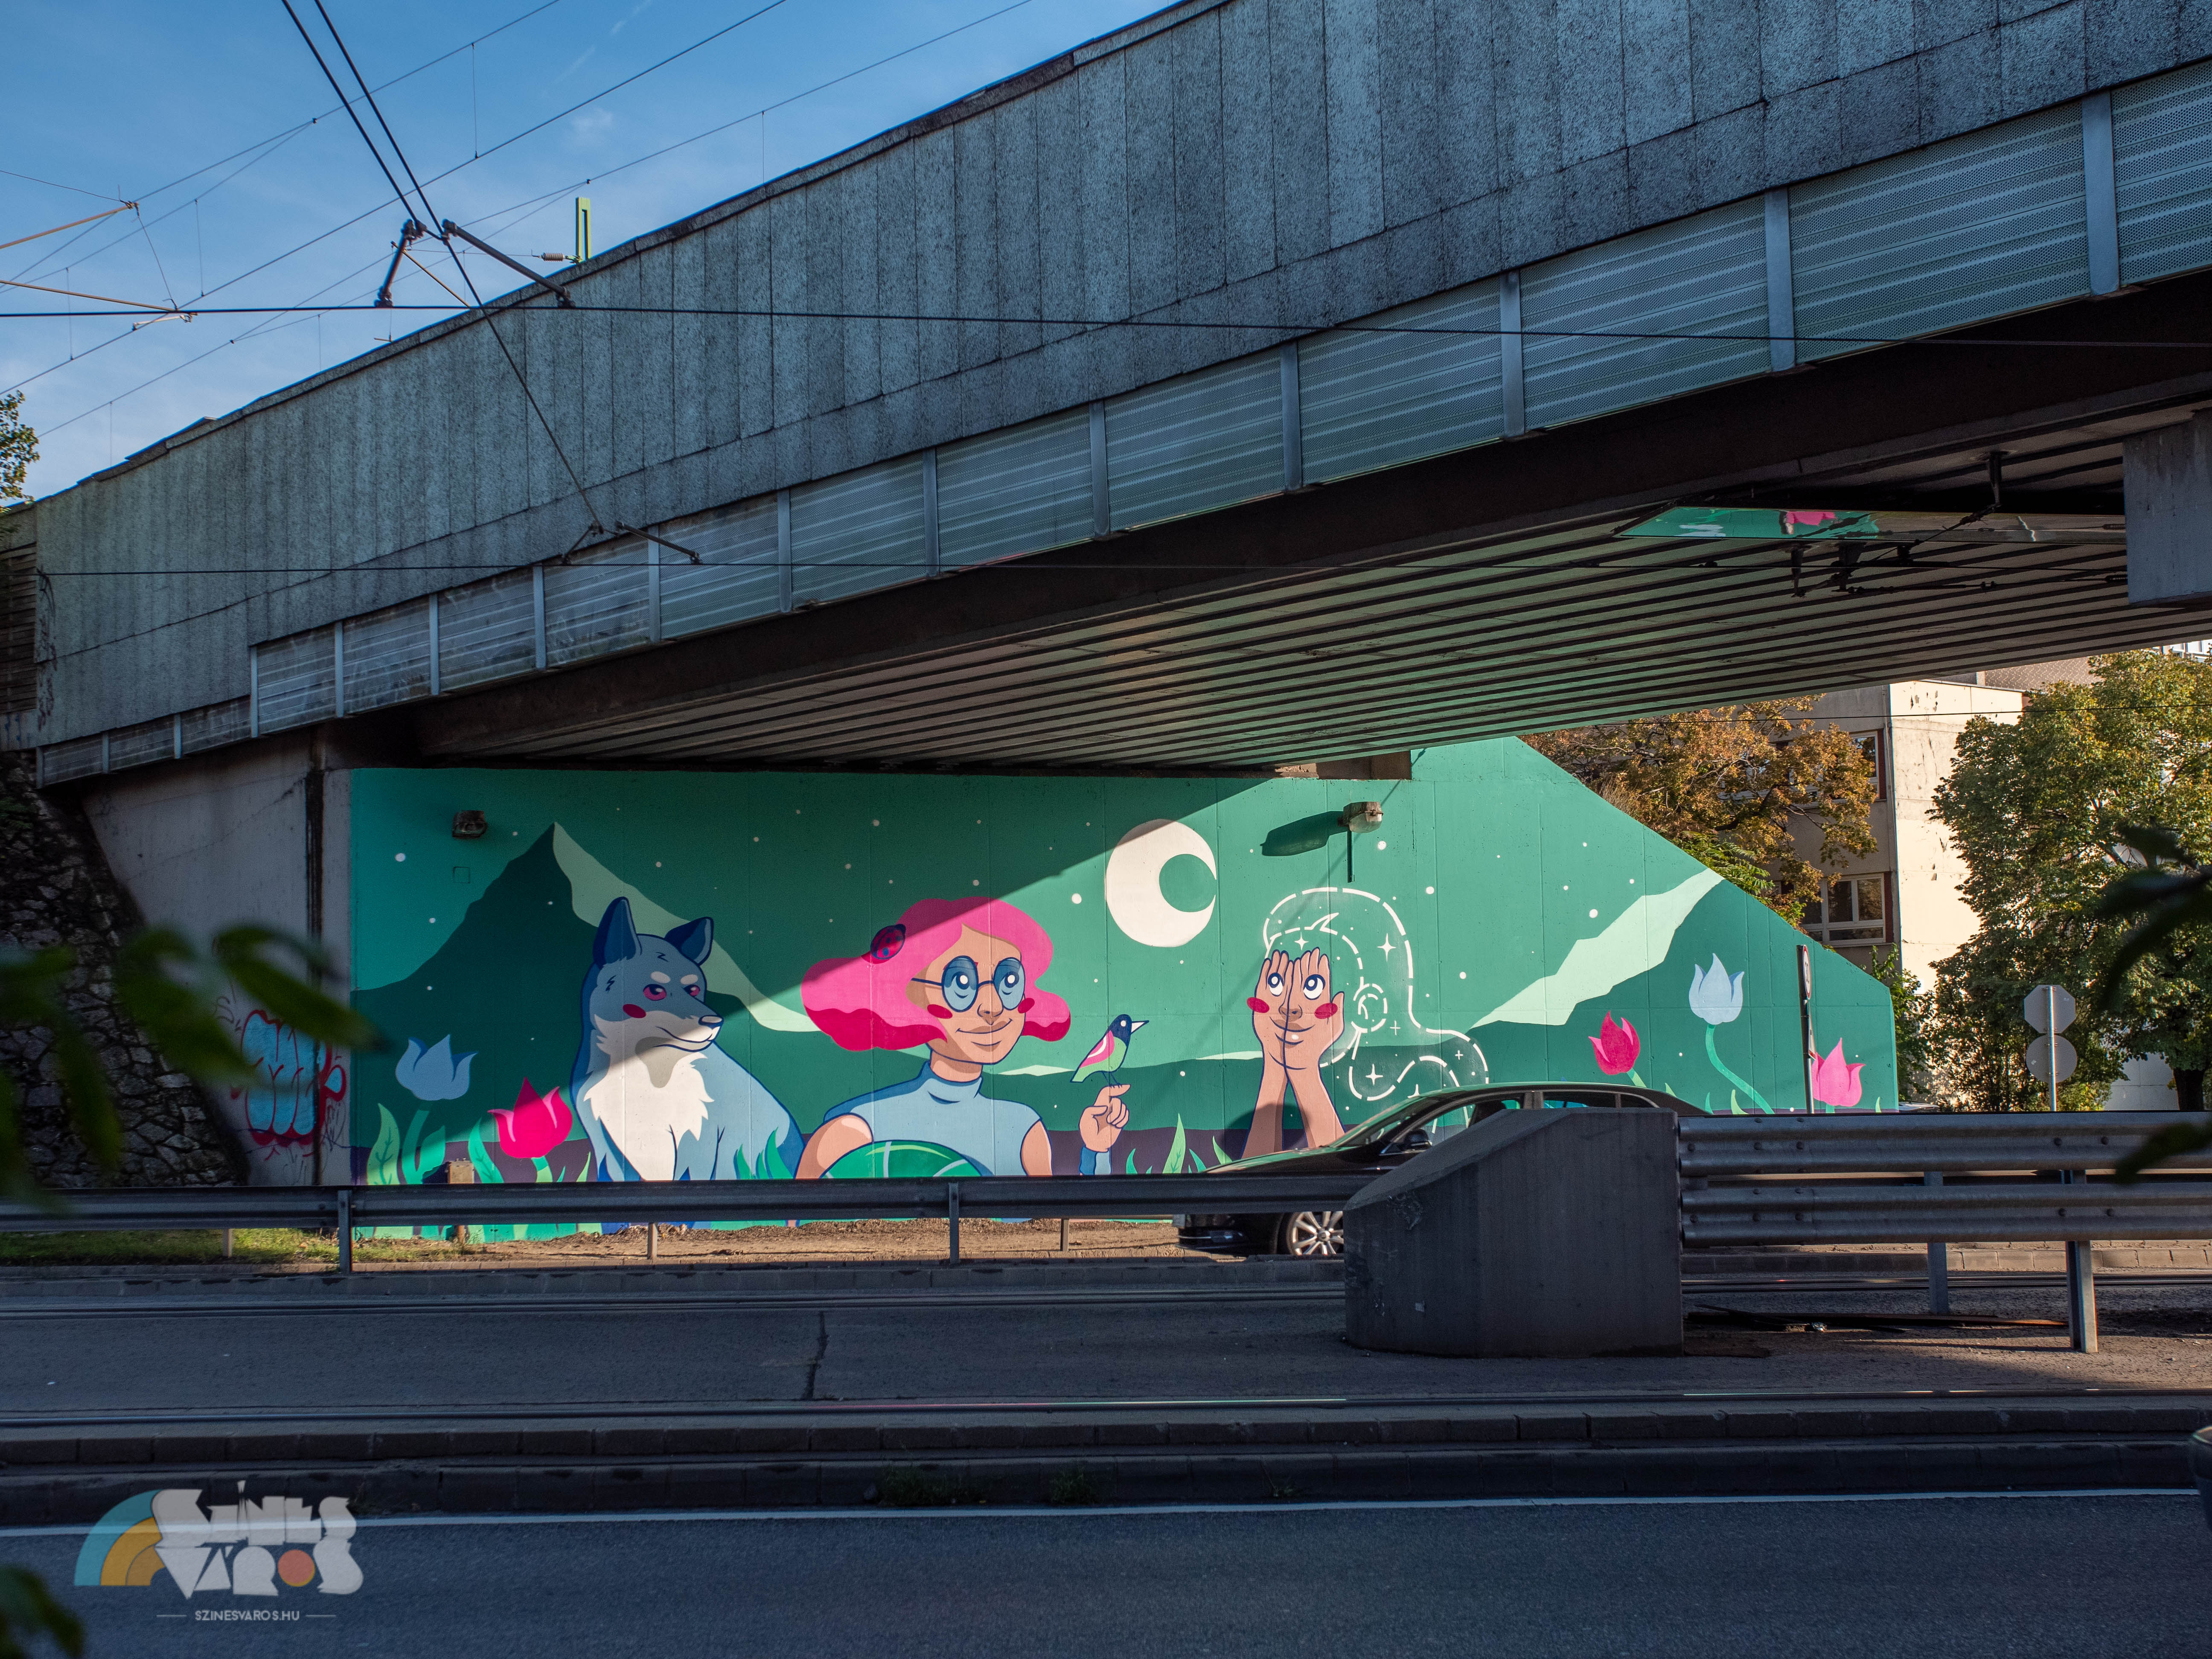 Két hídpillért is megfestettek a Szerémi úton – Az állatokért harcoló szuperhős és a láthatatlanná váló lány